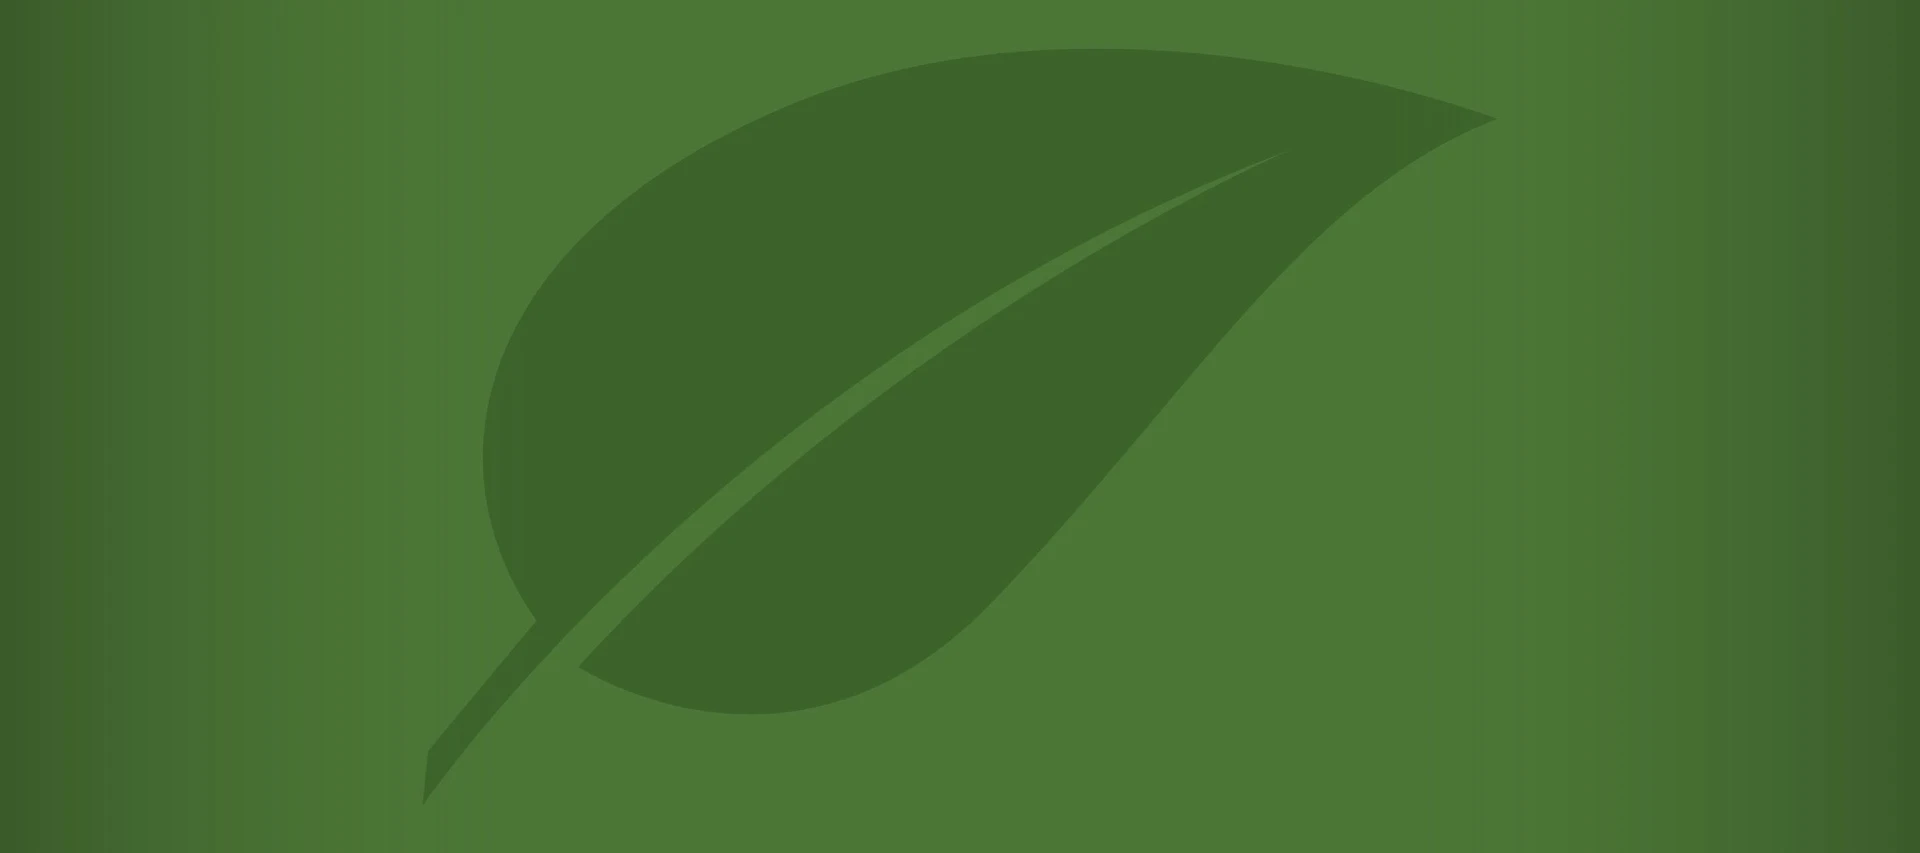 Green leaf illustration on green background